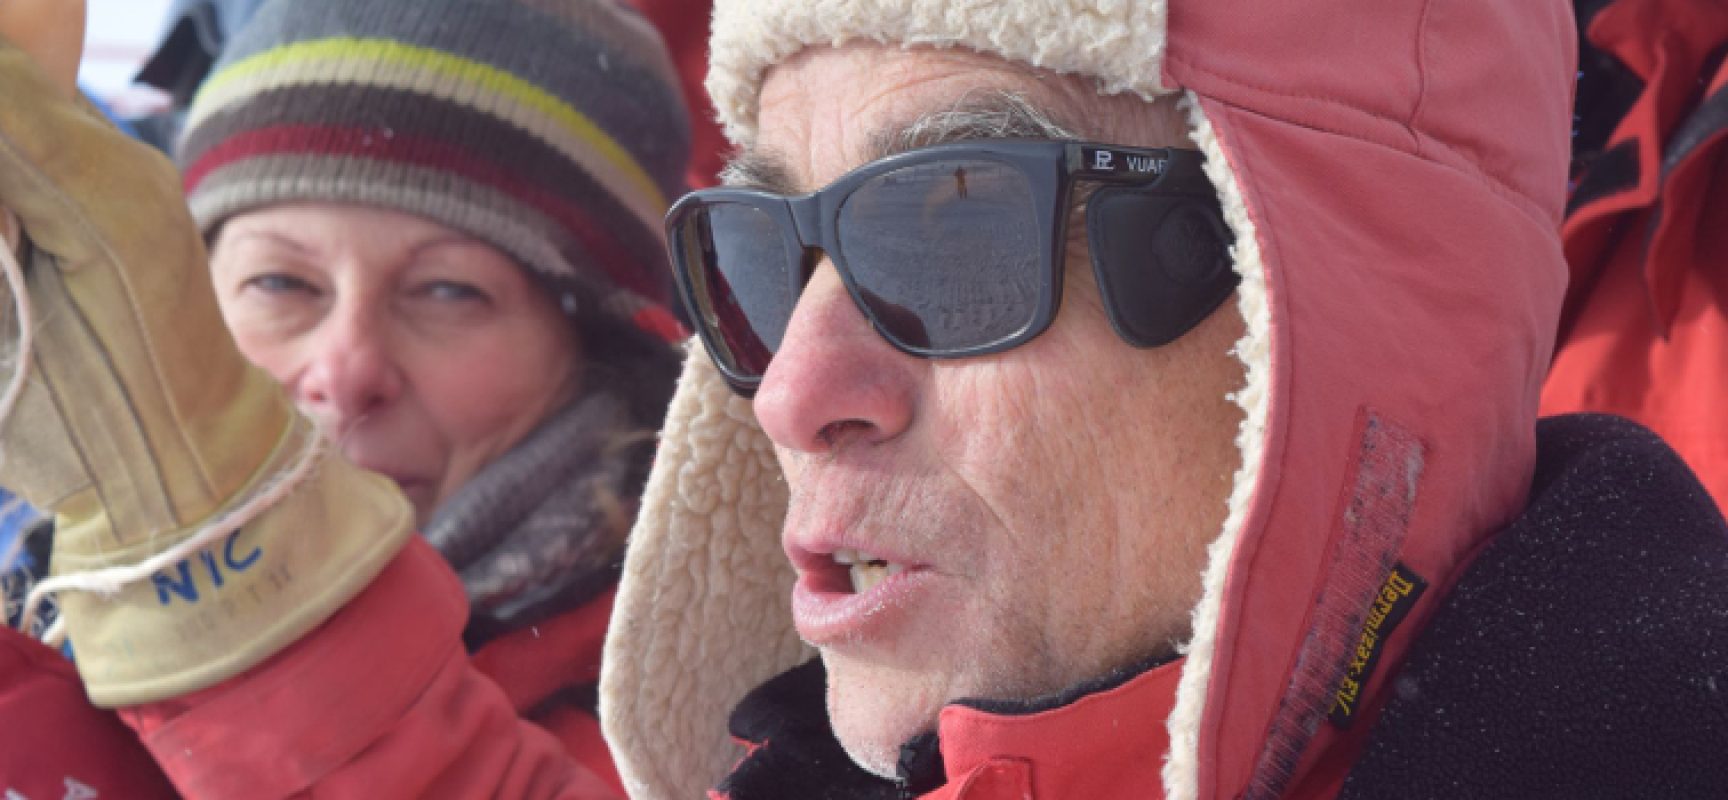 Il ricercatore biscegliese Nicola La Notte capo spedizione in Antartide, la sua esperienza